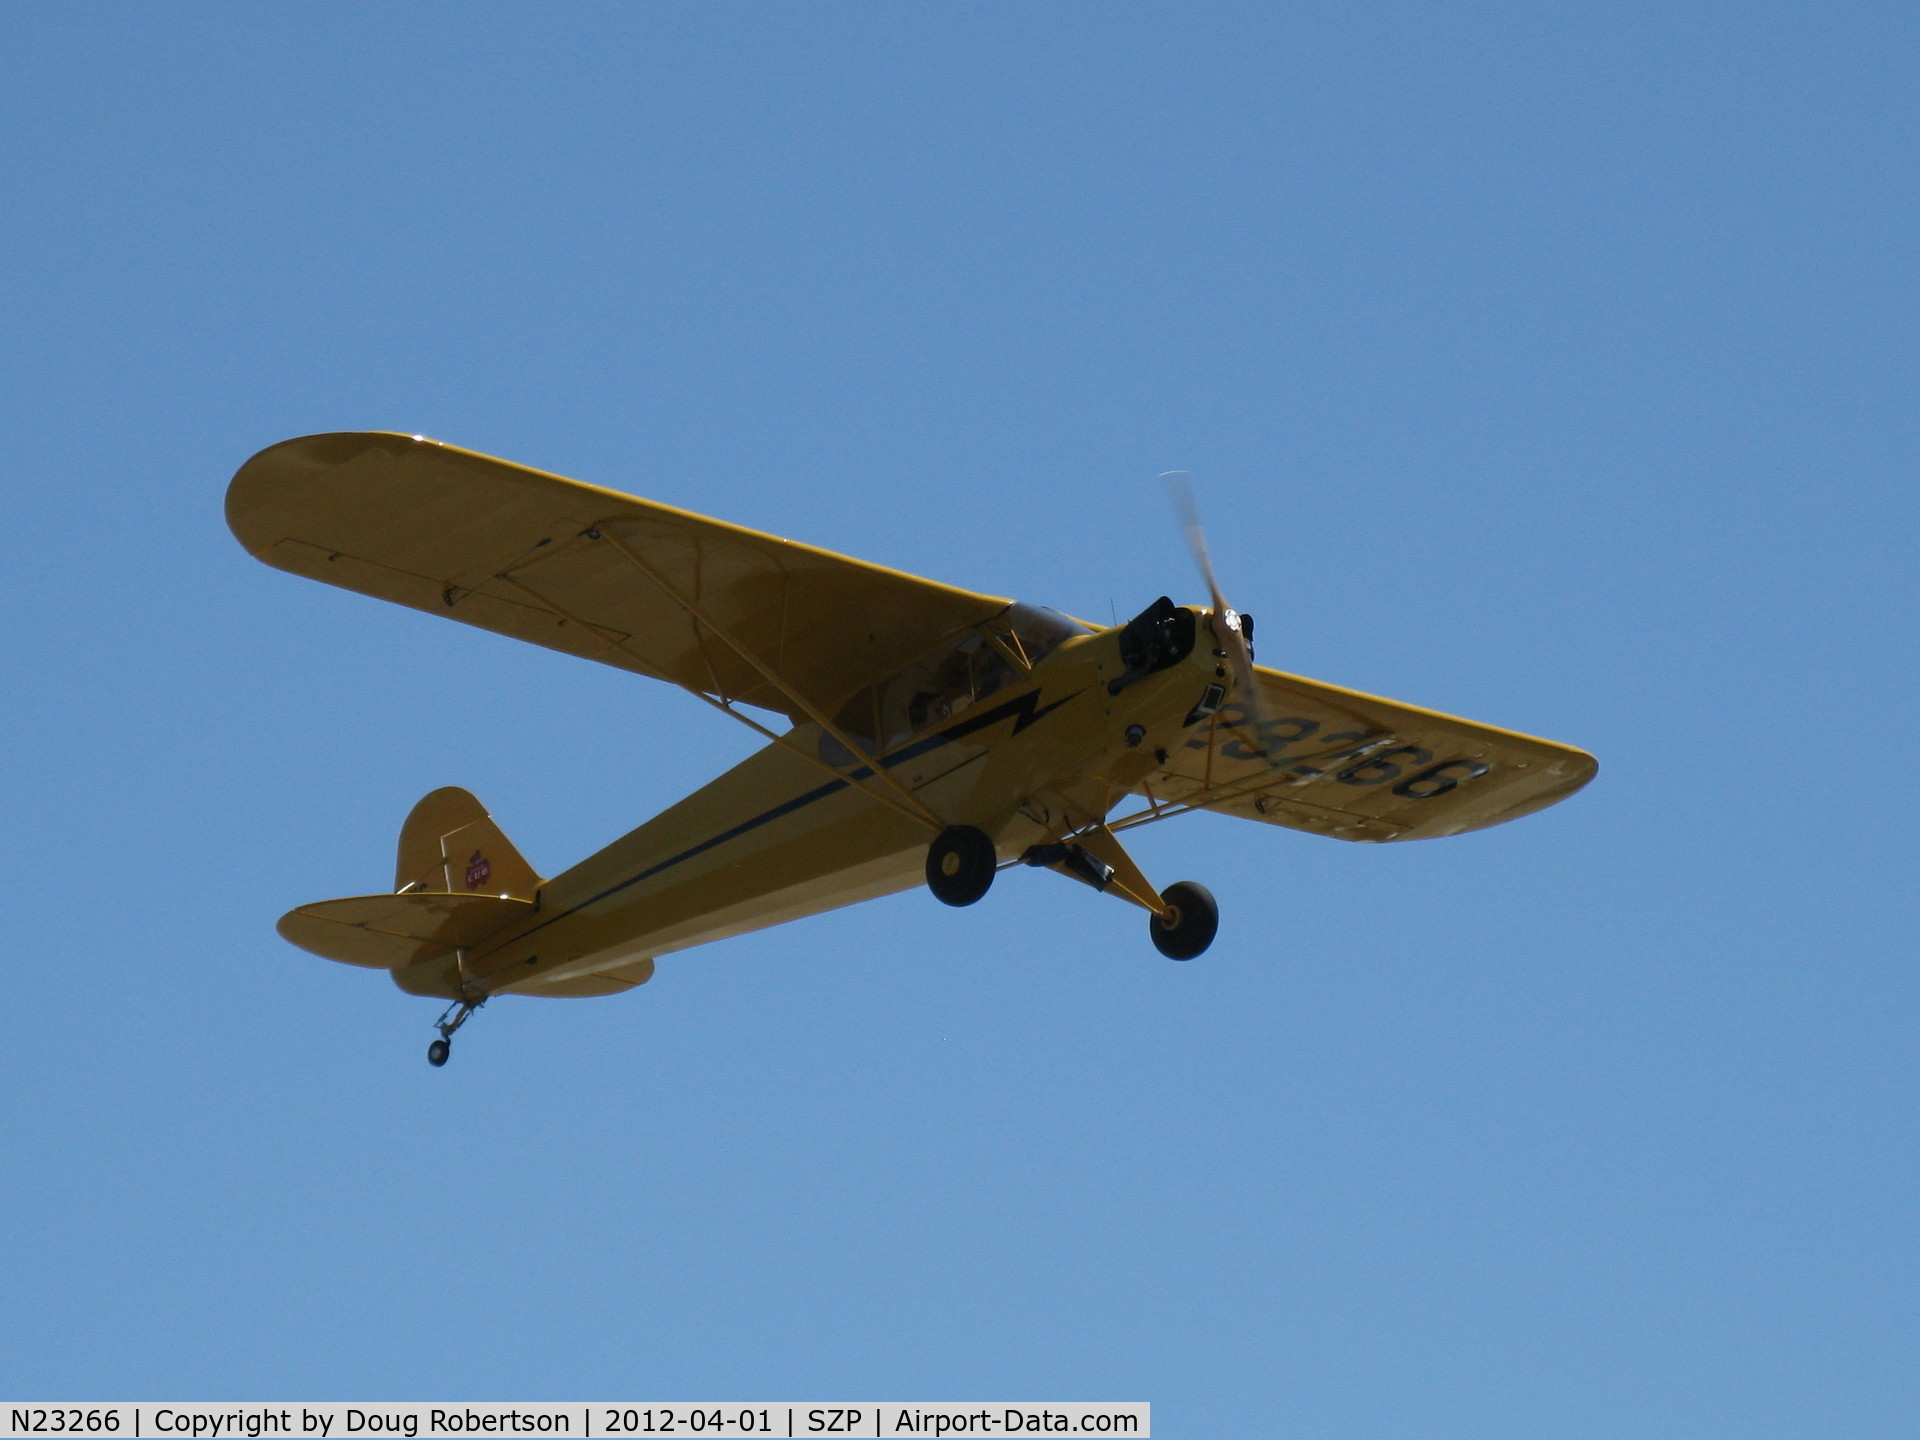 N23266, 1939 Piper J3C-65 Cub Cub C/N 3113, 1939 Piper J3C-65 CUB, Continental A&C65 65 Hp, takeoff climb Rwy 22